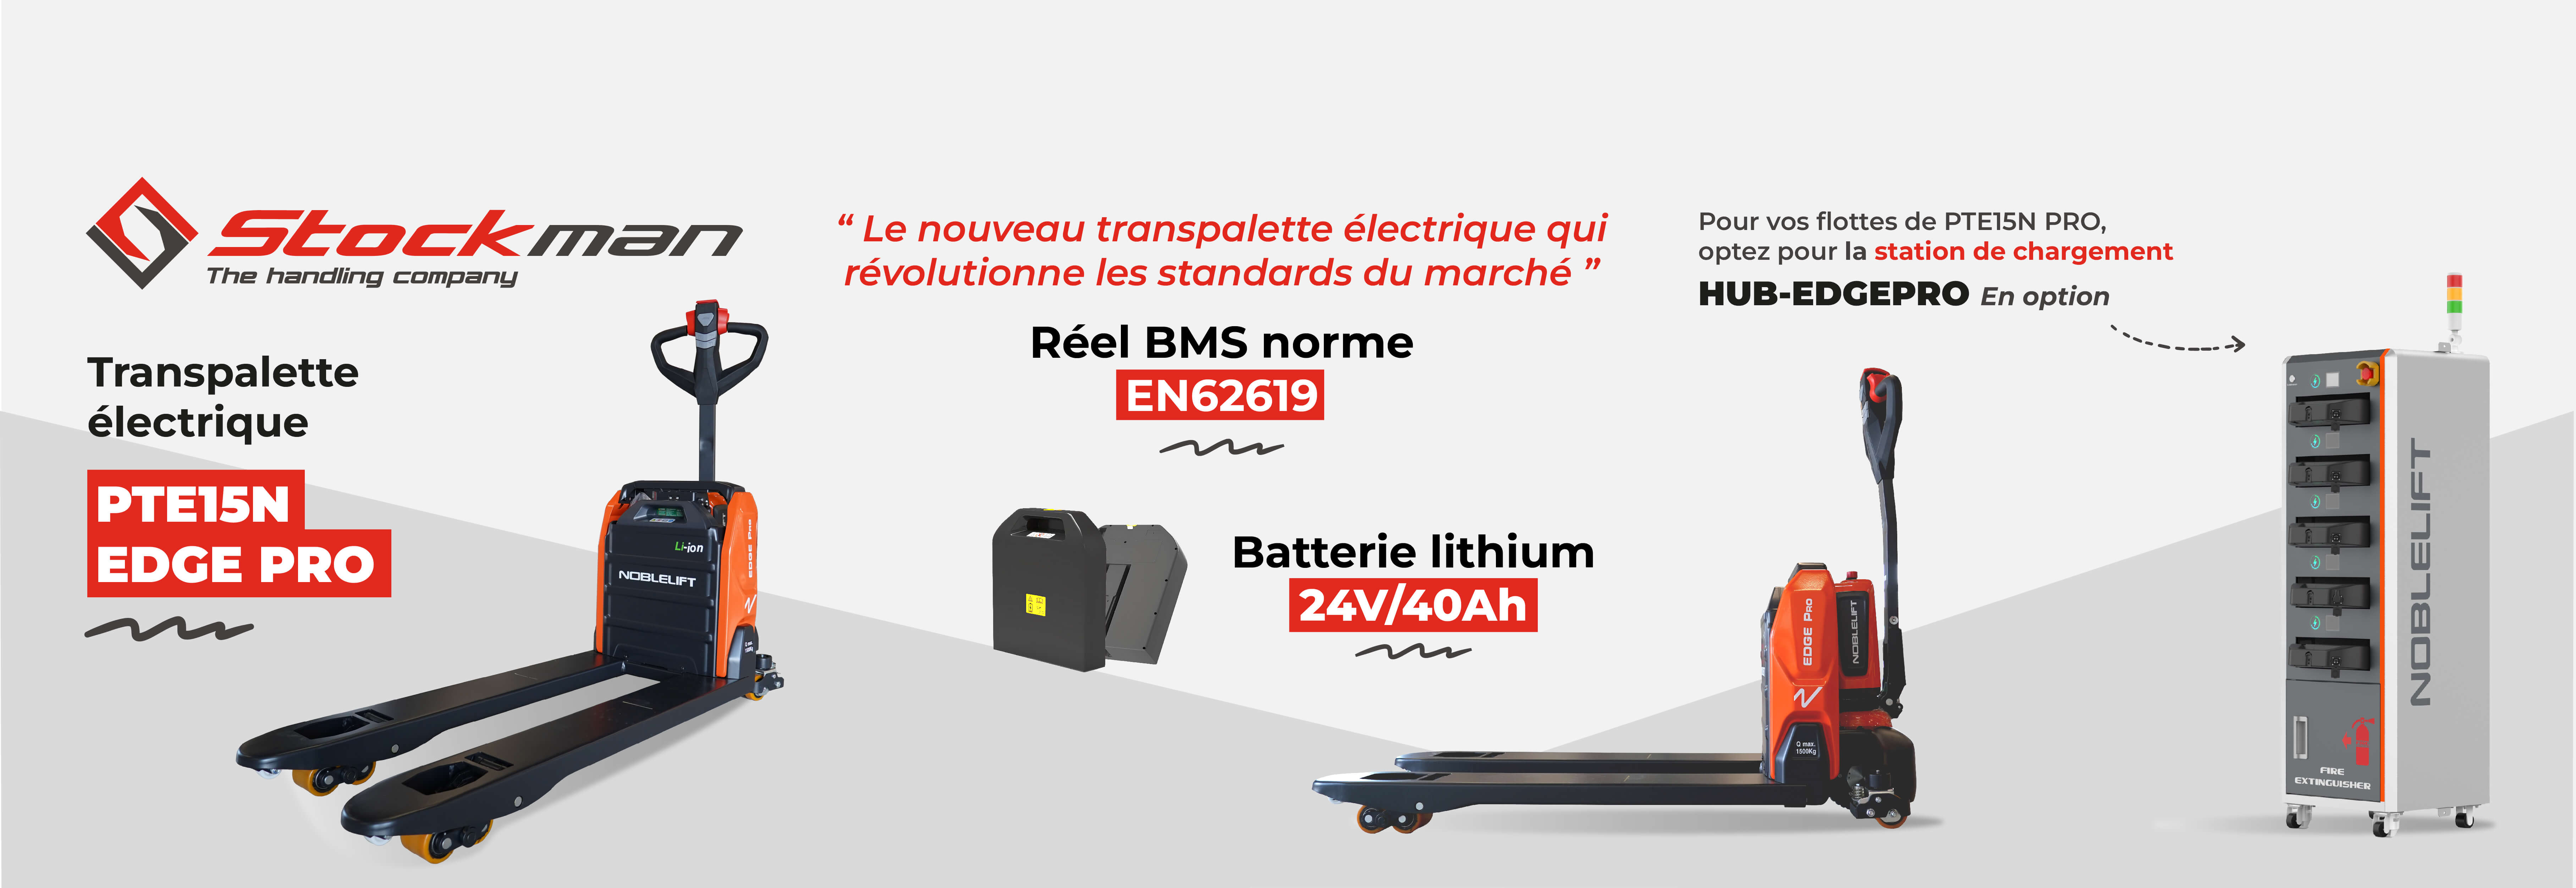 https://www.stockman.fr/fr/transpalette-electrique-pte15npro-15-tonne-usage-intensif-et-batterie-lithium-de-40-ah__PTE15NPRO.aspx